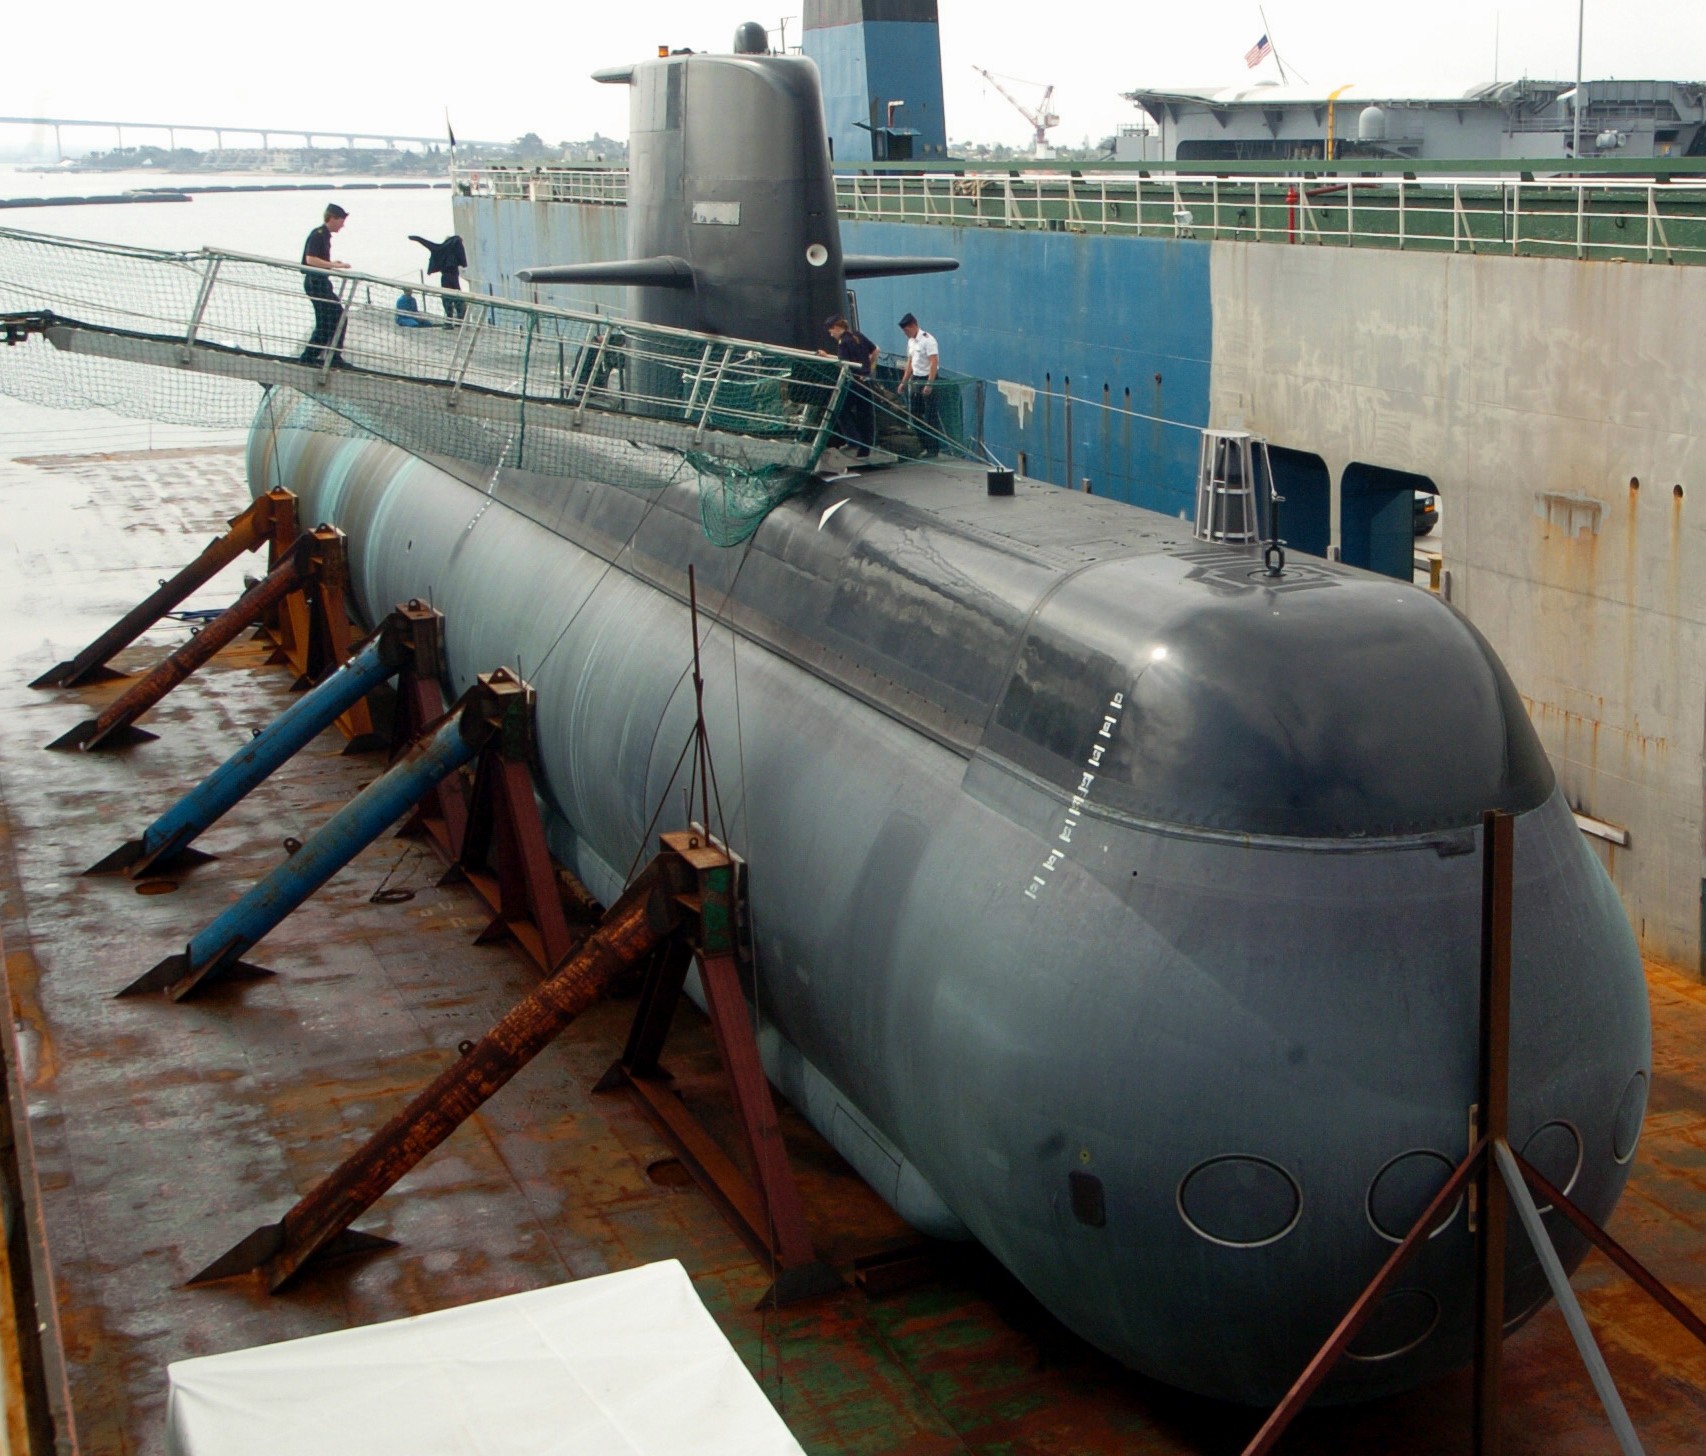 hswms hms gotland gtd class submarine ssk swedish navy svenska marinen försvarsmakten kockums 20